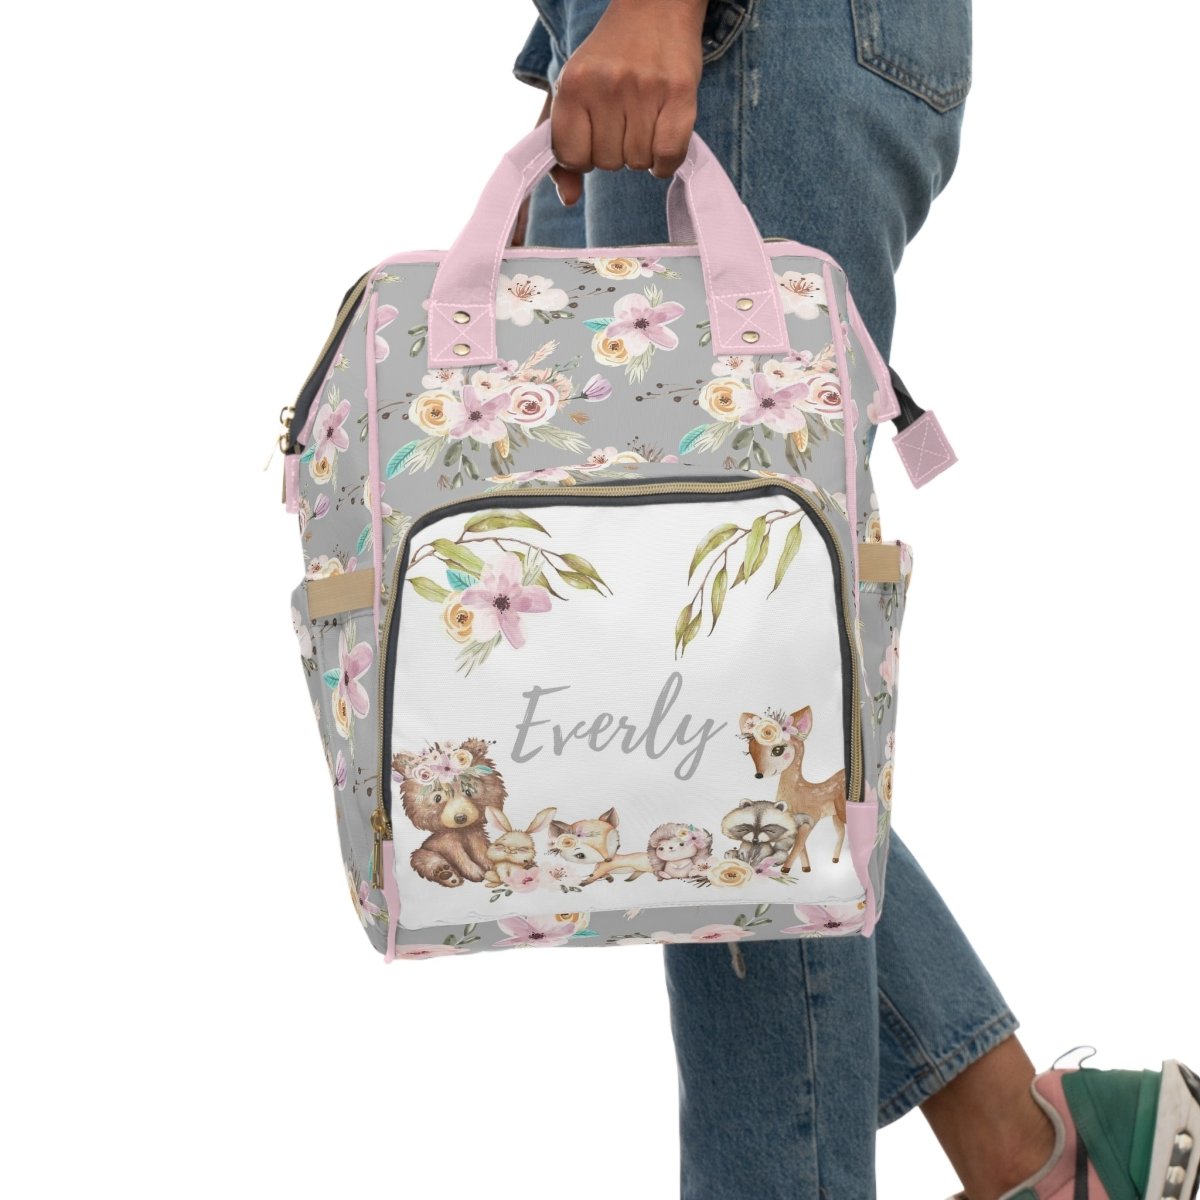 Floral Woodlands Personalized Backpack Diaper Bag - Floral Woodlands, gender_girl, text